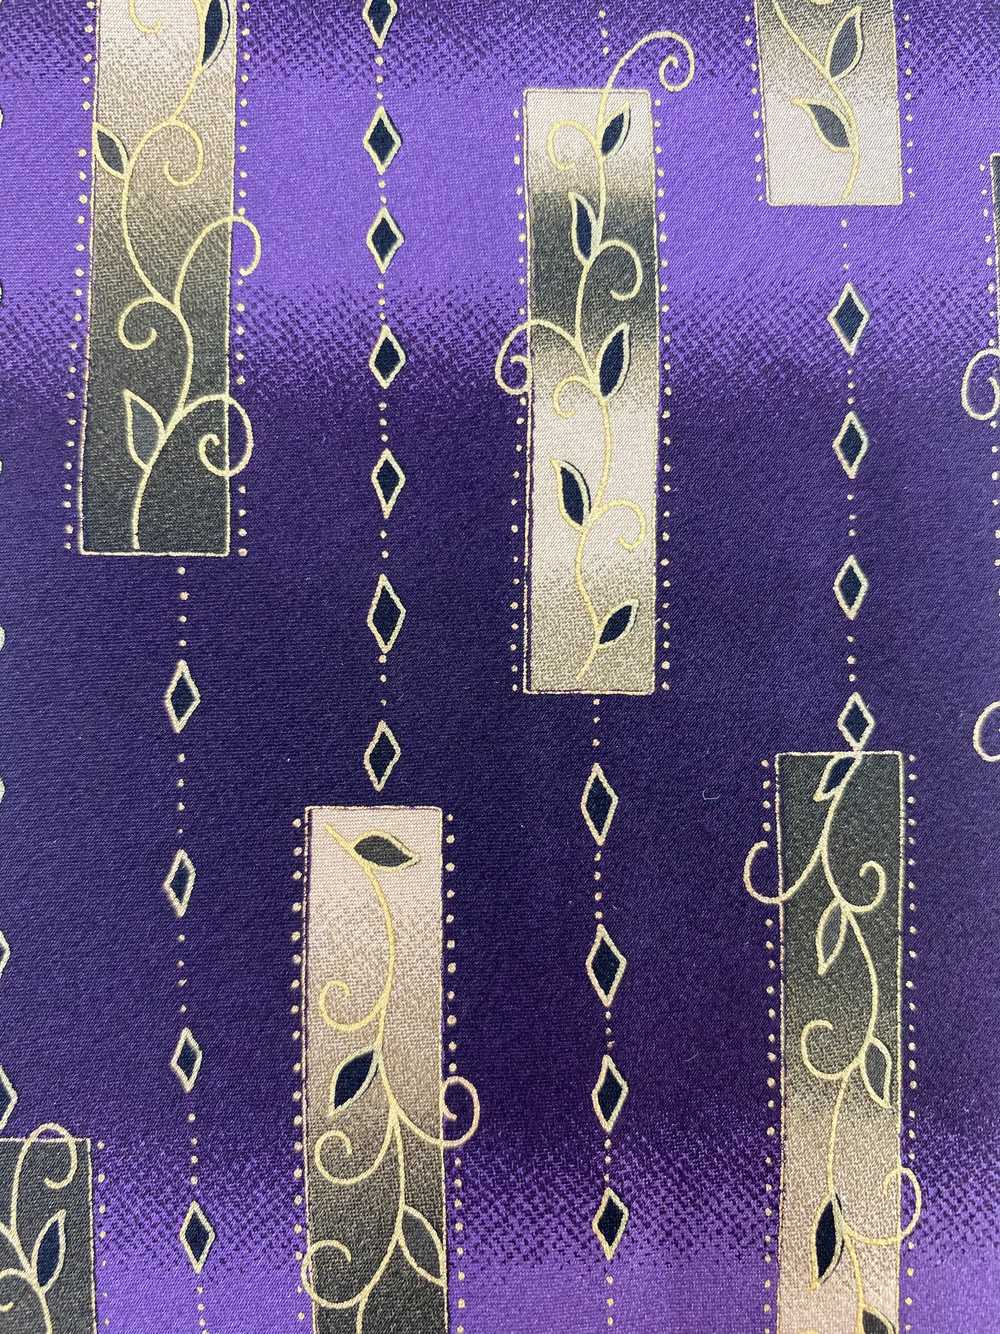 90s Deadstock Silk Necktie, Men's Vintage Purple/… - image 2